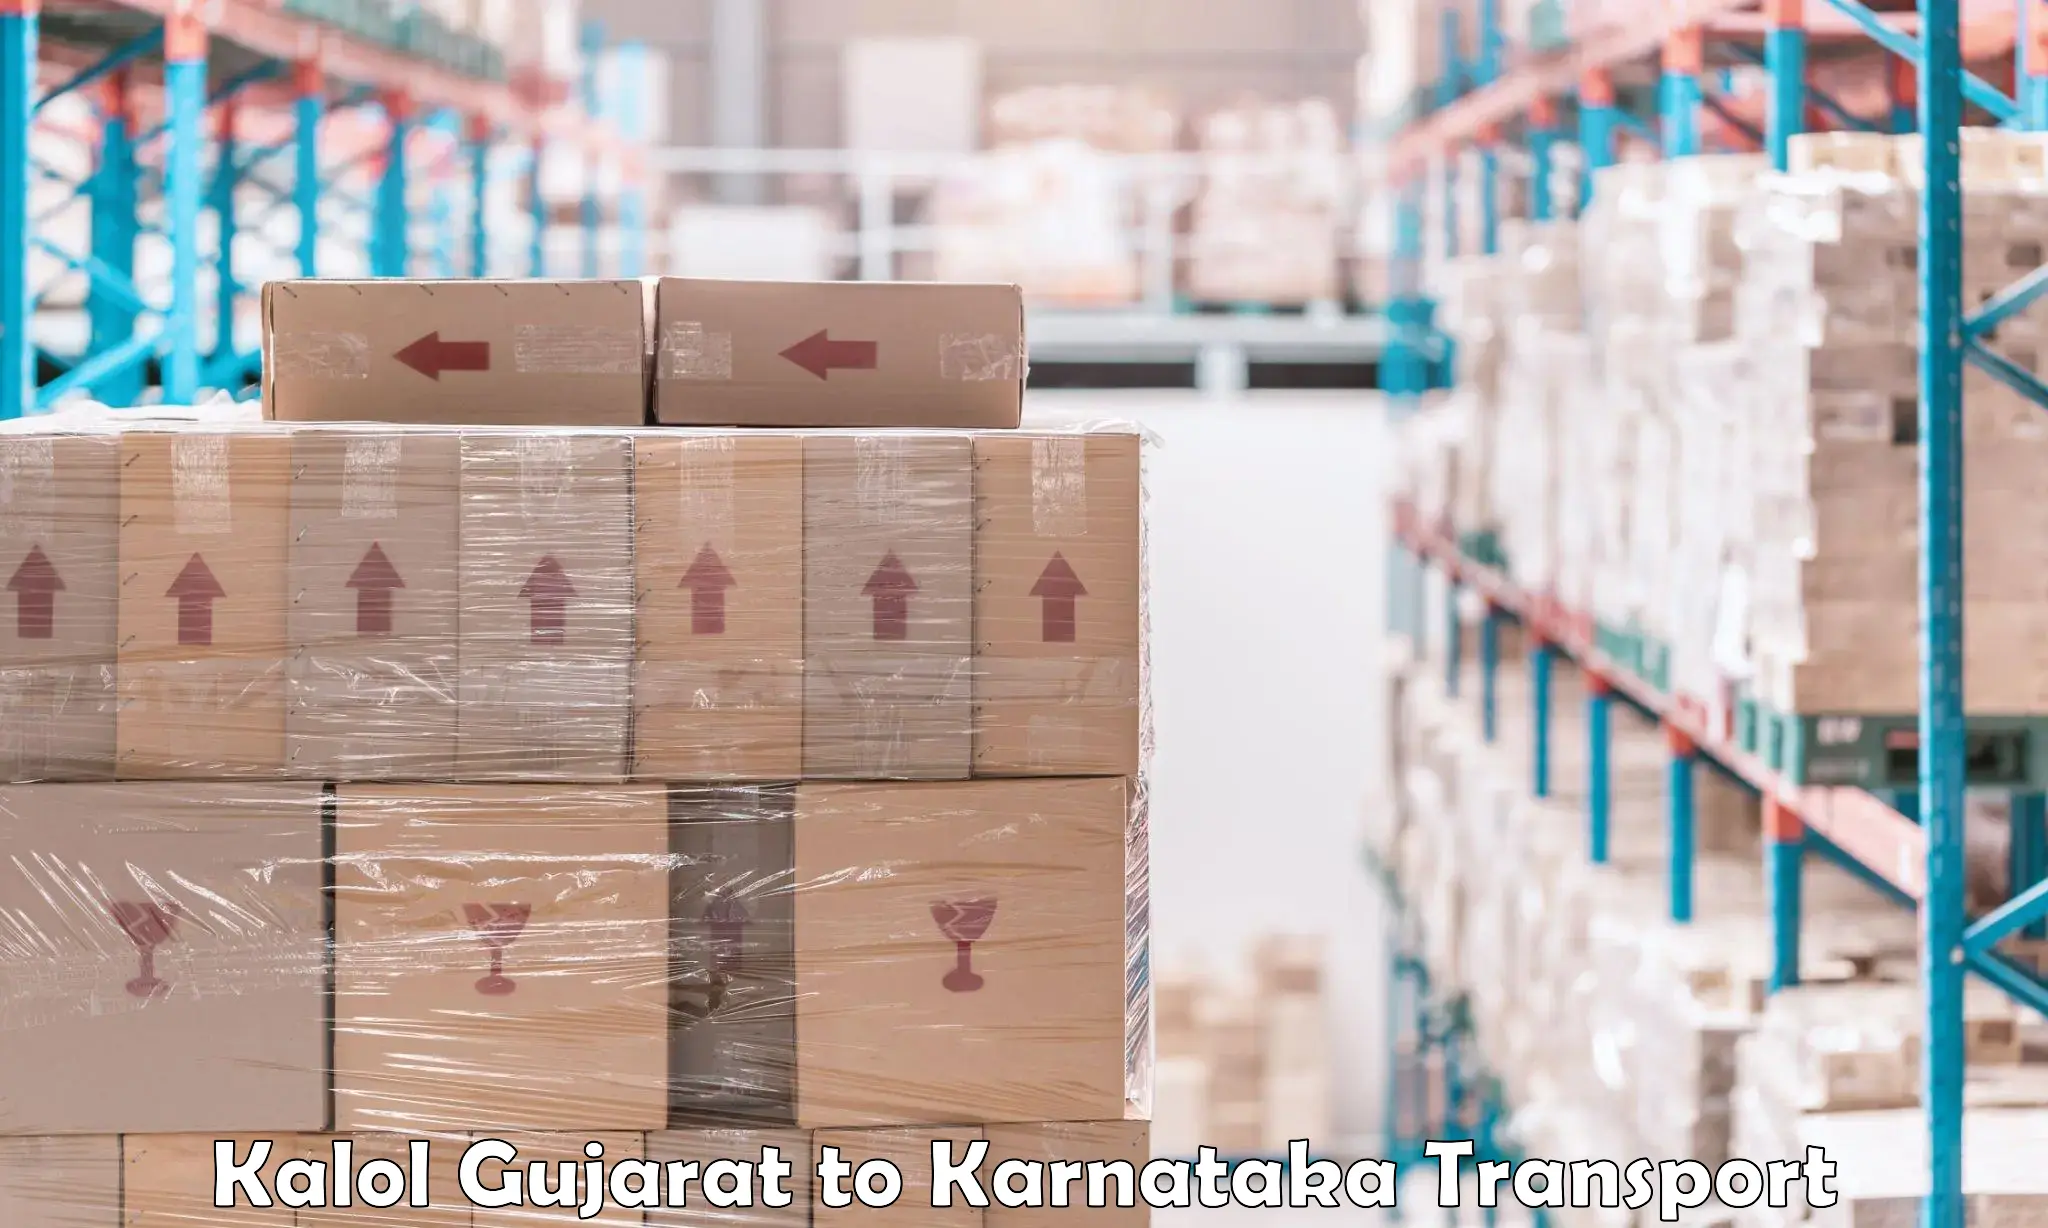 Shipping partner Kalol Gujarat to Mundgod